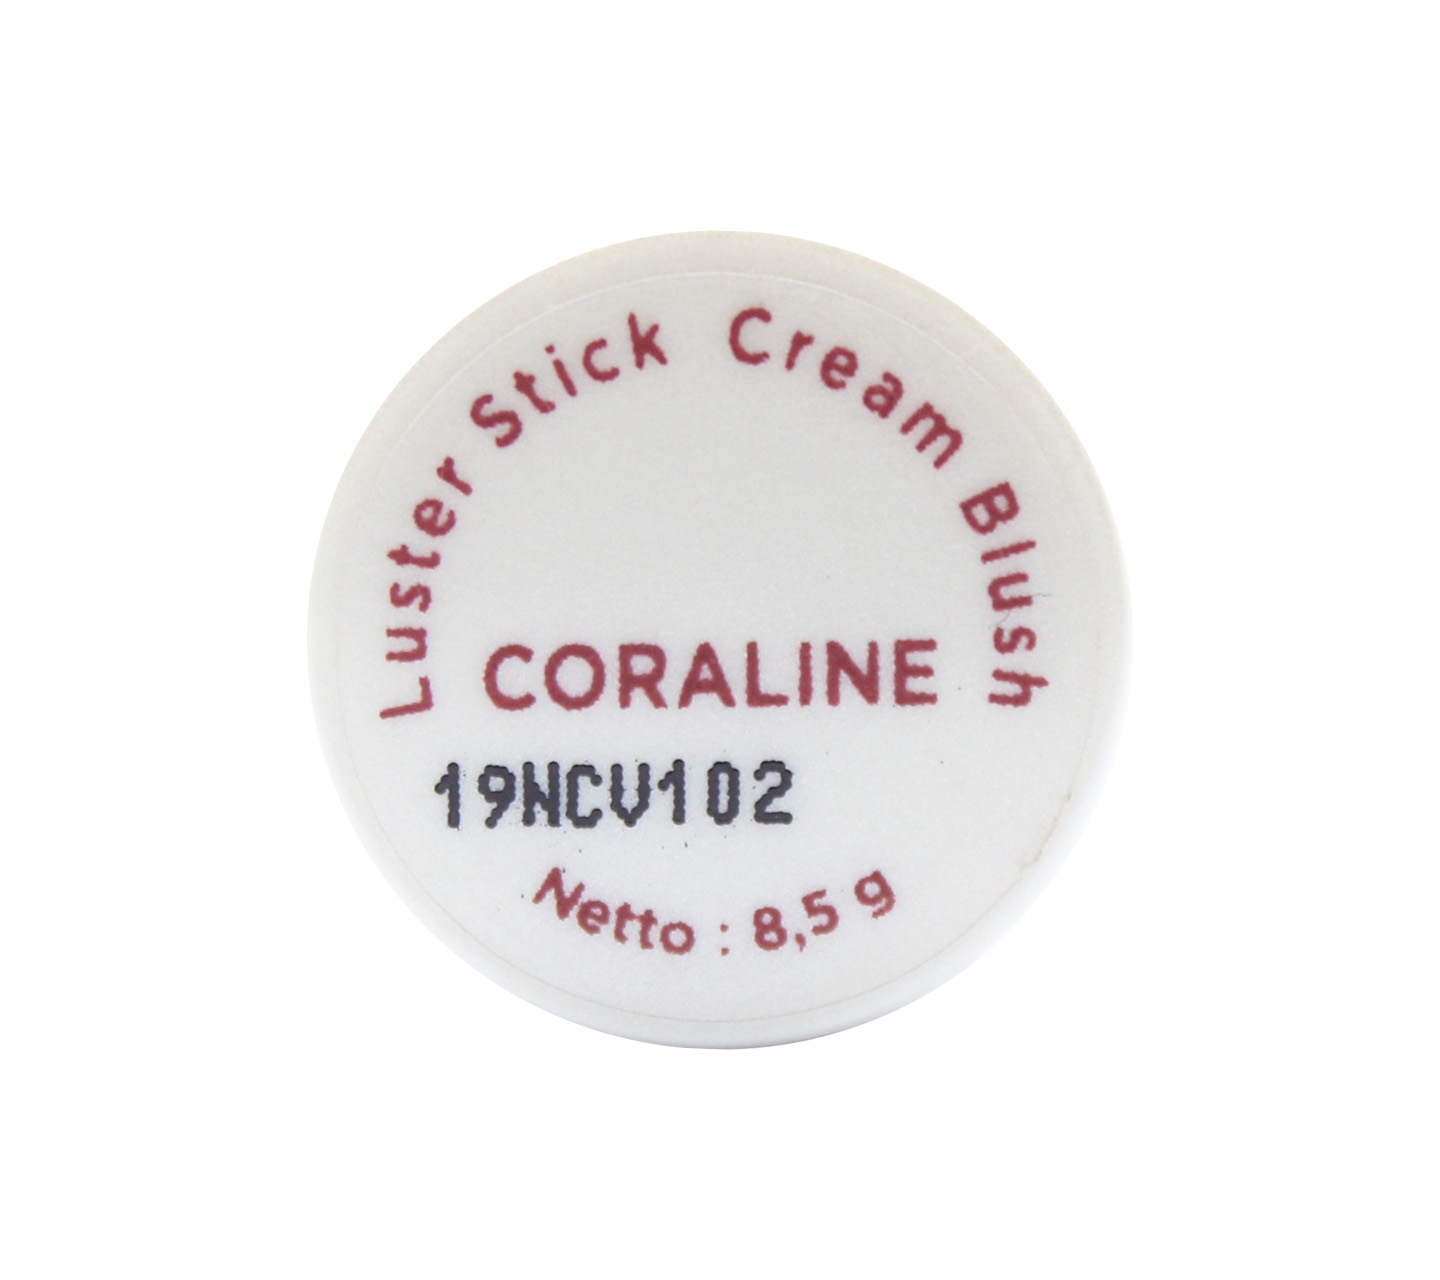 Femme Luster Stick Cream Blush #Coraline Faces